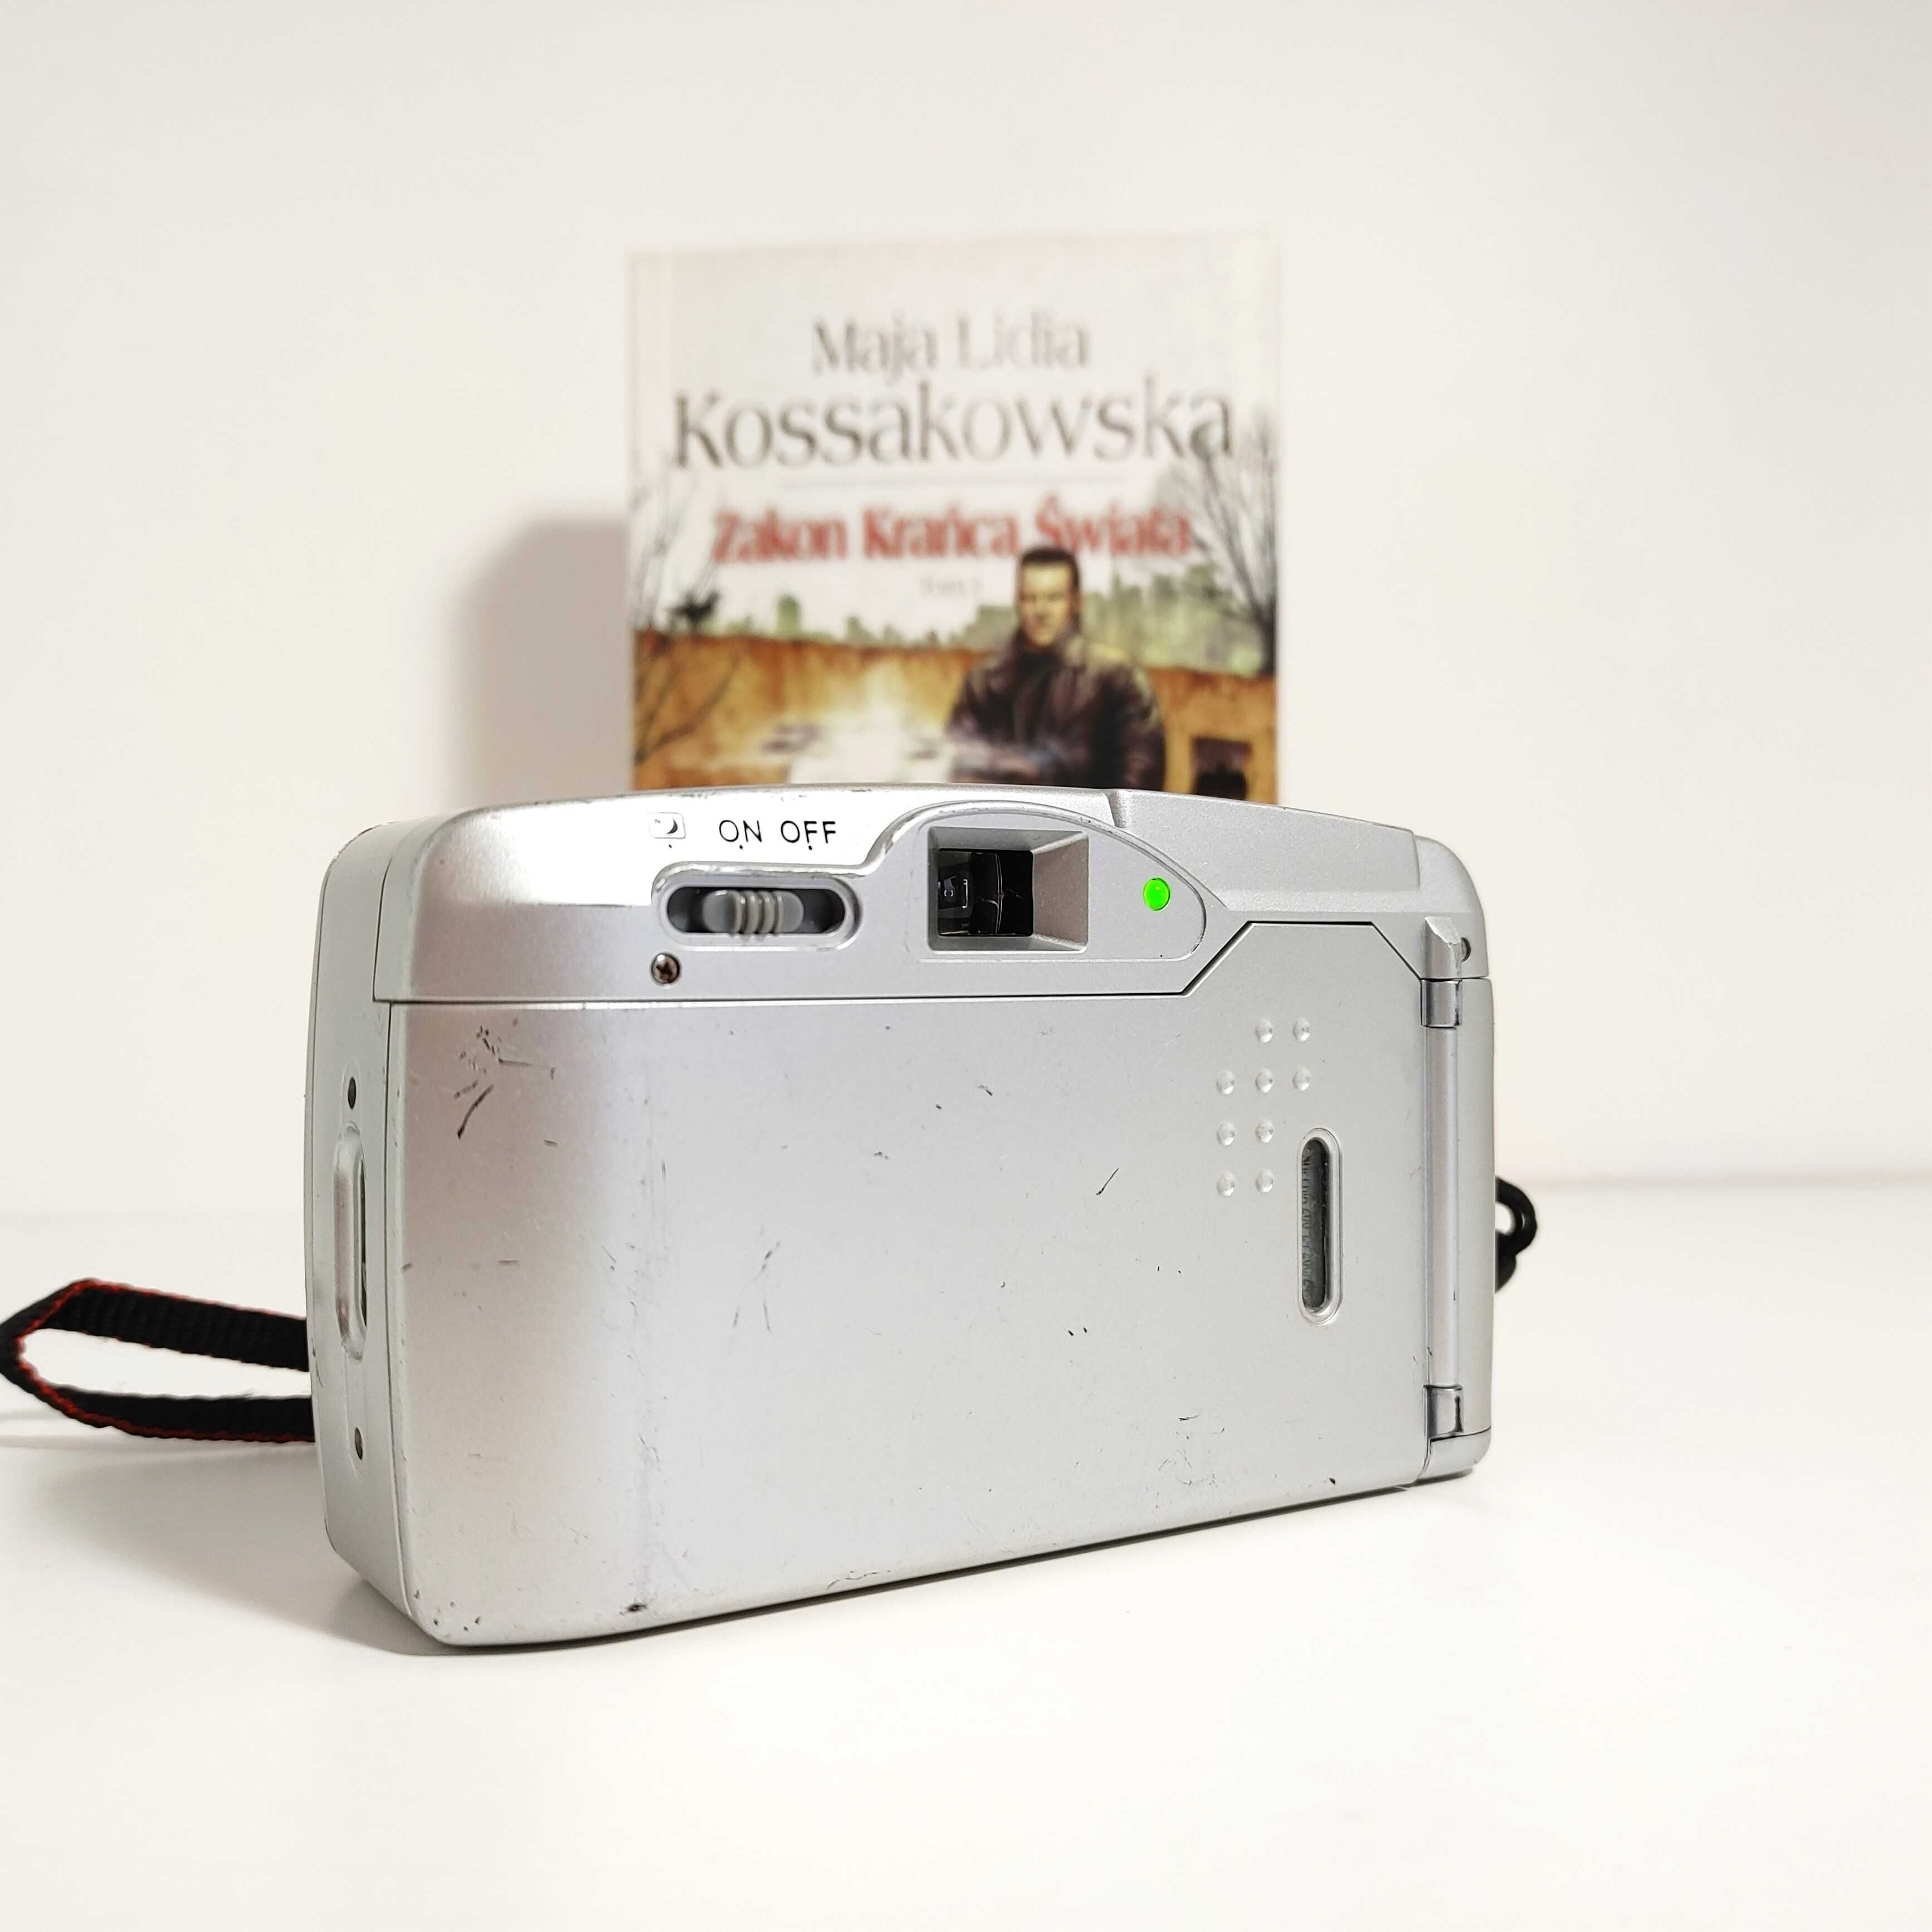 Kompaktowy aparat fotograficzny POLAROID Power Zoom PZ2001